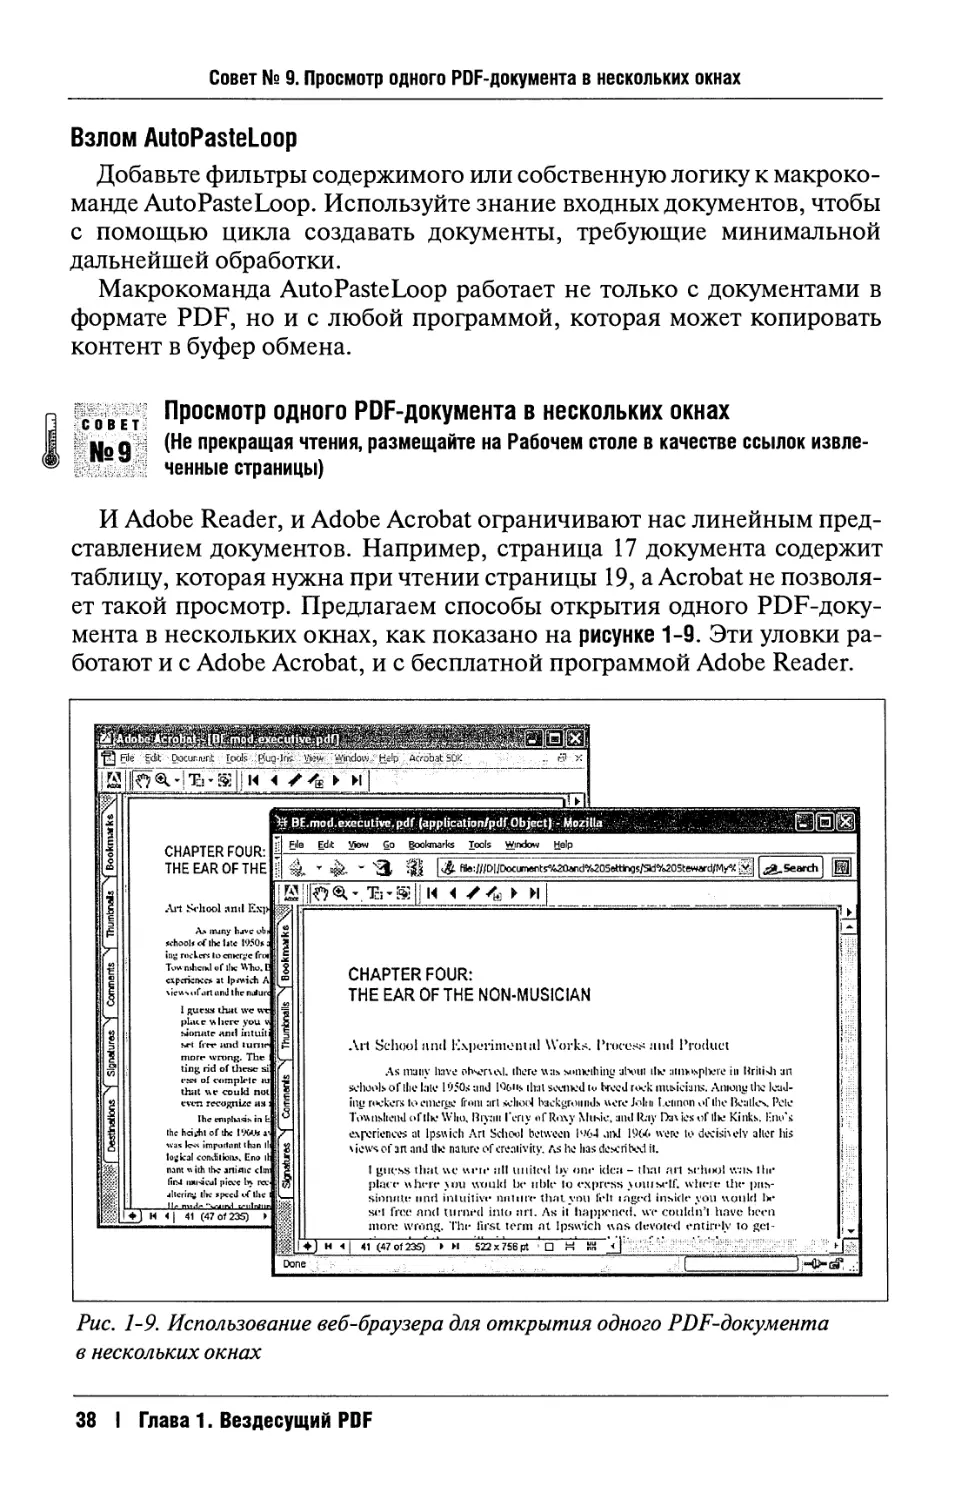 9. Просмотр одного PDF-документа в нескольких окнах